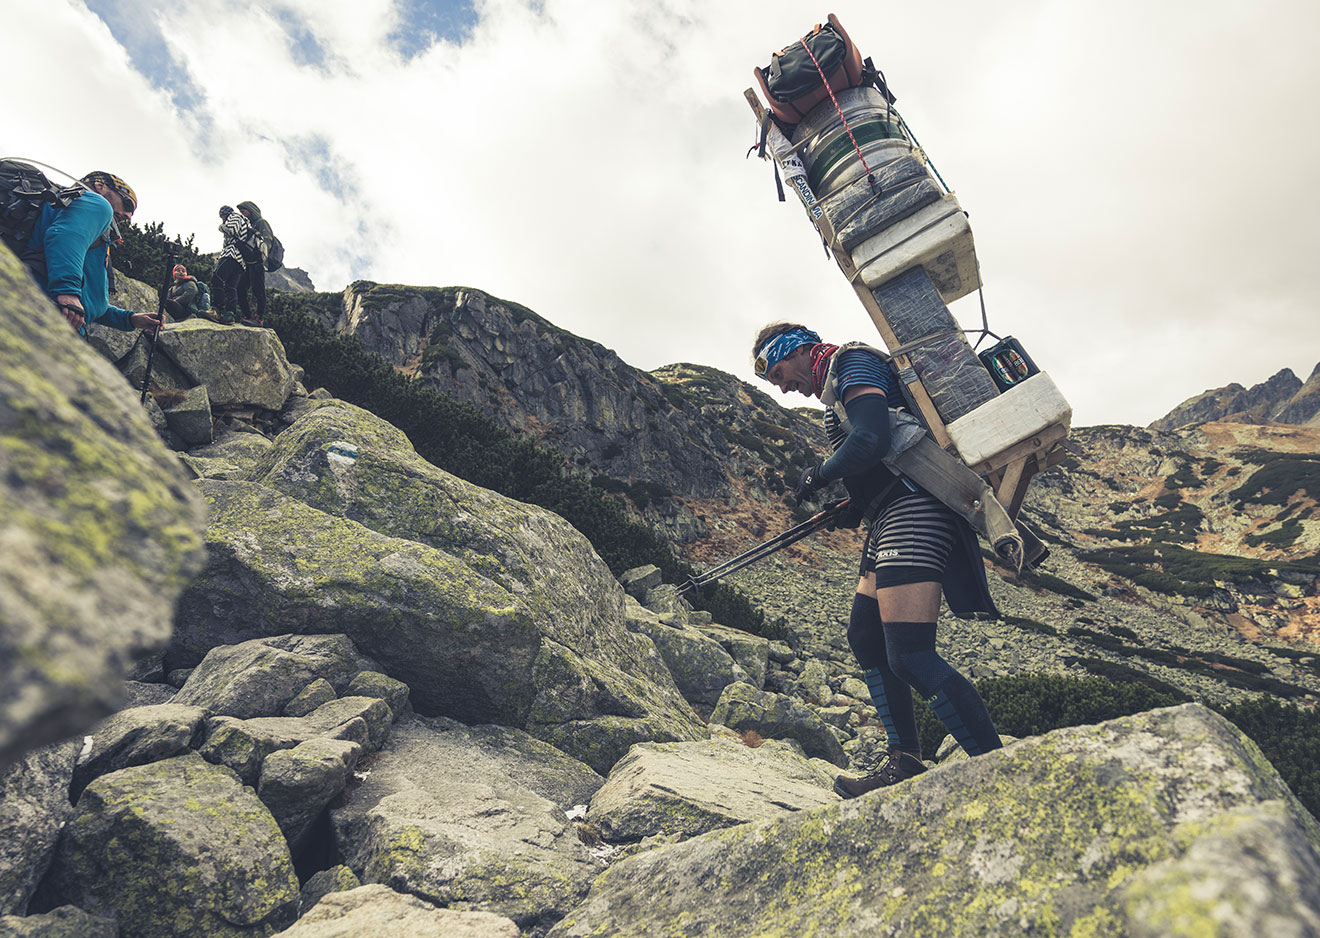 Ein Tatra Sherpa trägt seine voll beladene Kraxe über einen Hang voller großer Felsen